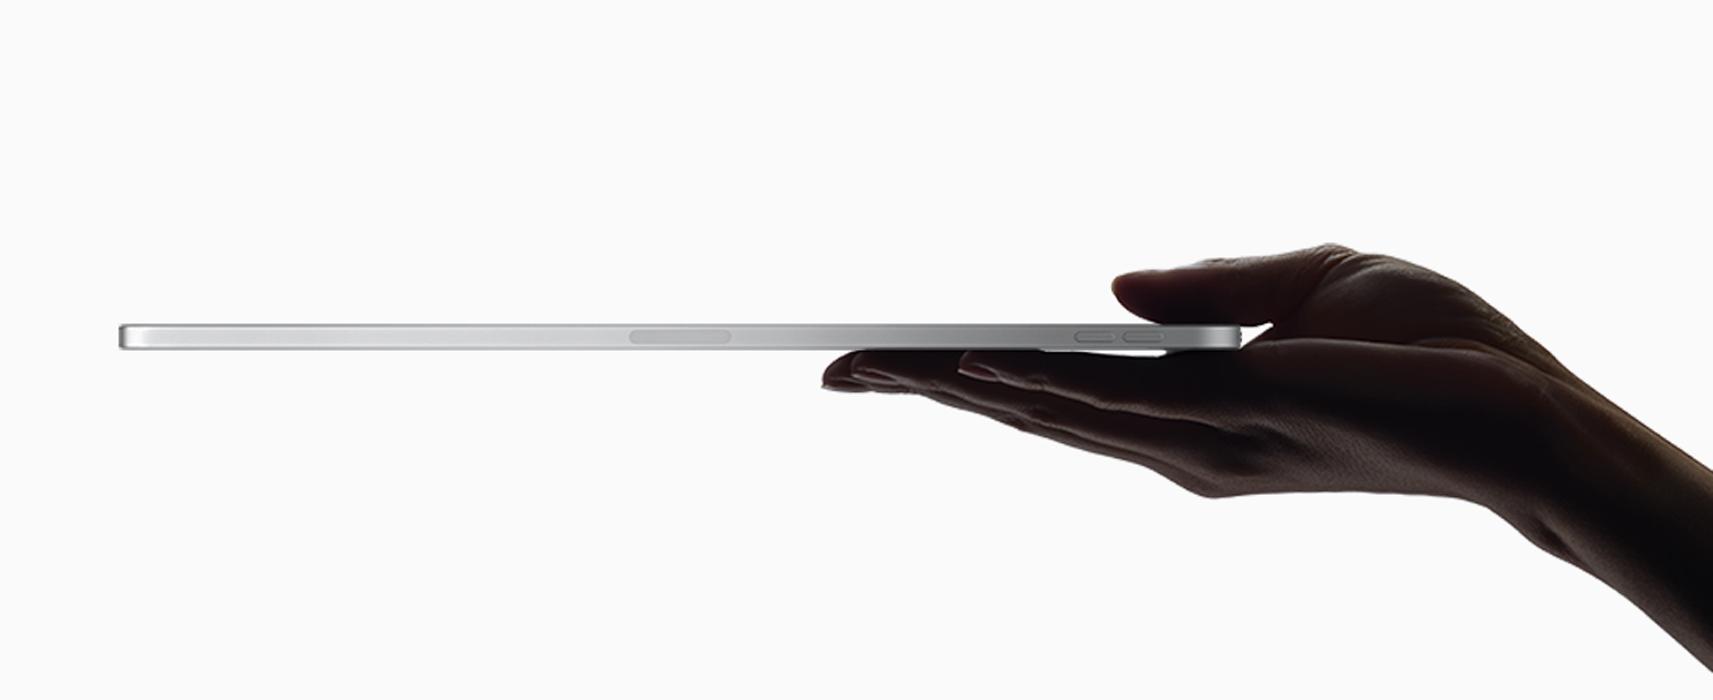 Nya Ipad Pro är bara 5,9 millimeter tjock, eller tunn.